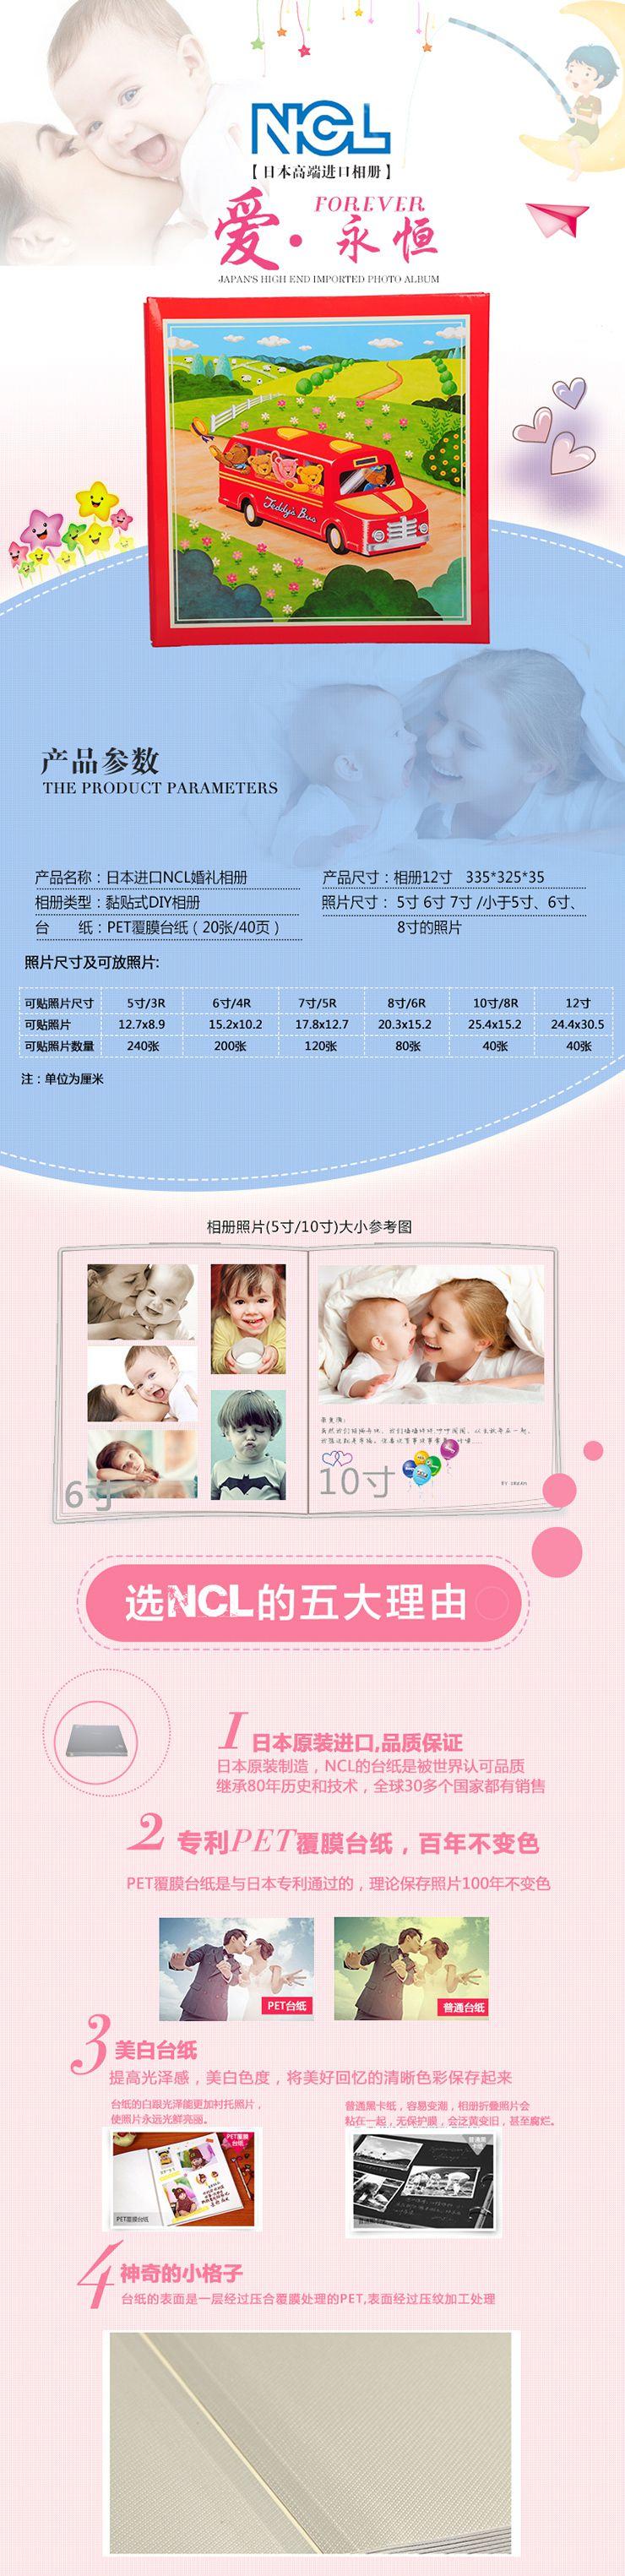 NCL日本原装进口相册儿童婴儿影集BYB-73252-X-1红色小汽车 红色